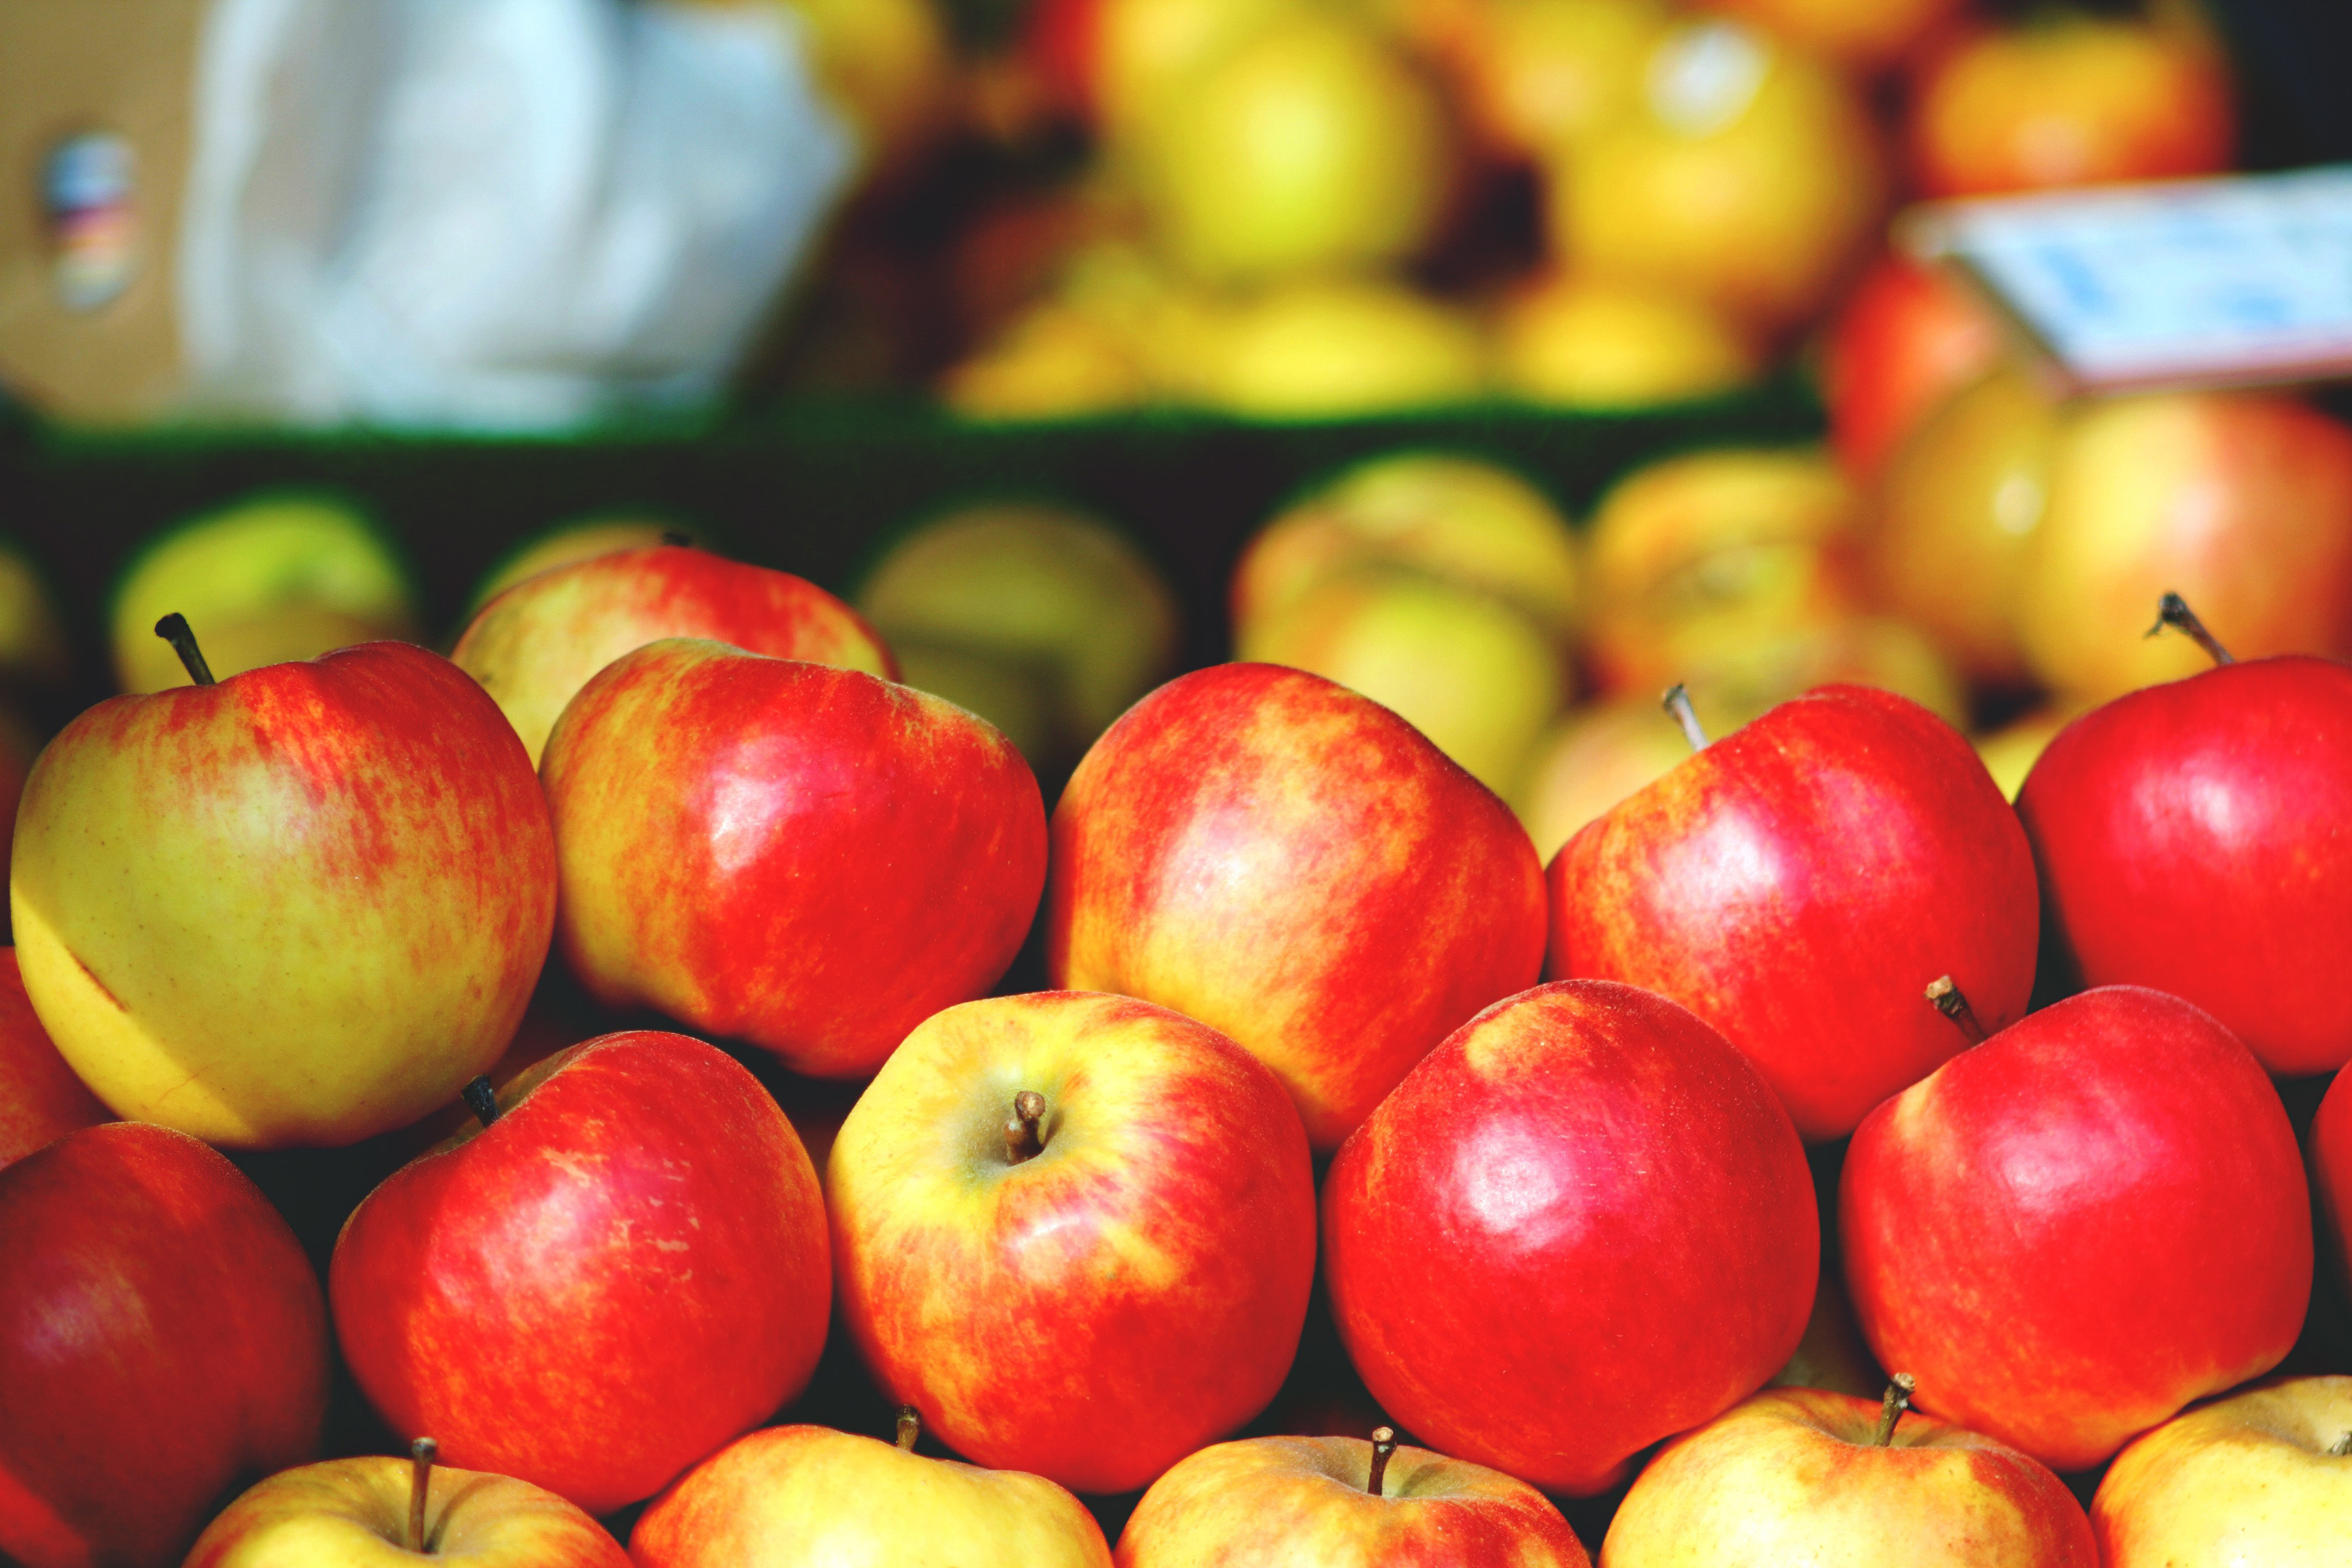 Яблоки купить рынок. Яблоки на рынке. Рынок с фруктами с яблоками. Красные яблоки на рынке. Яблоки на базаре.